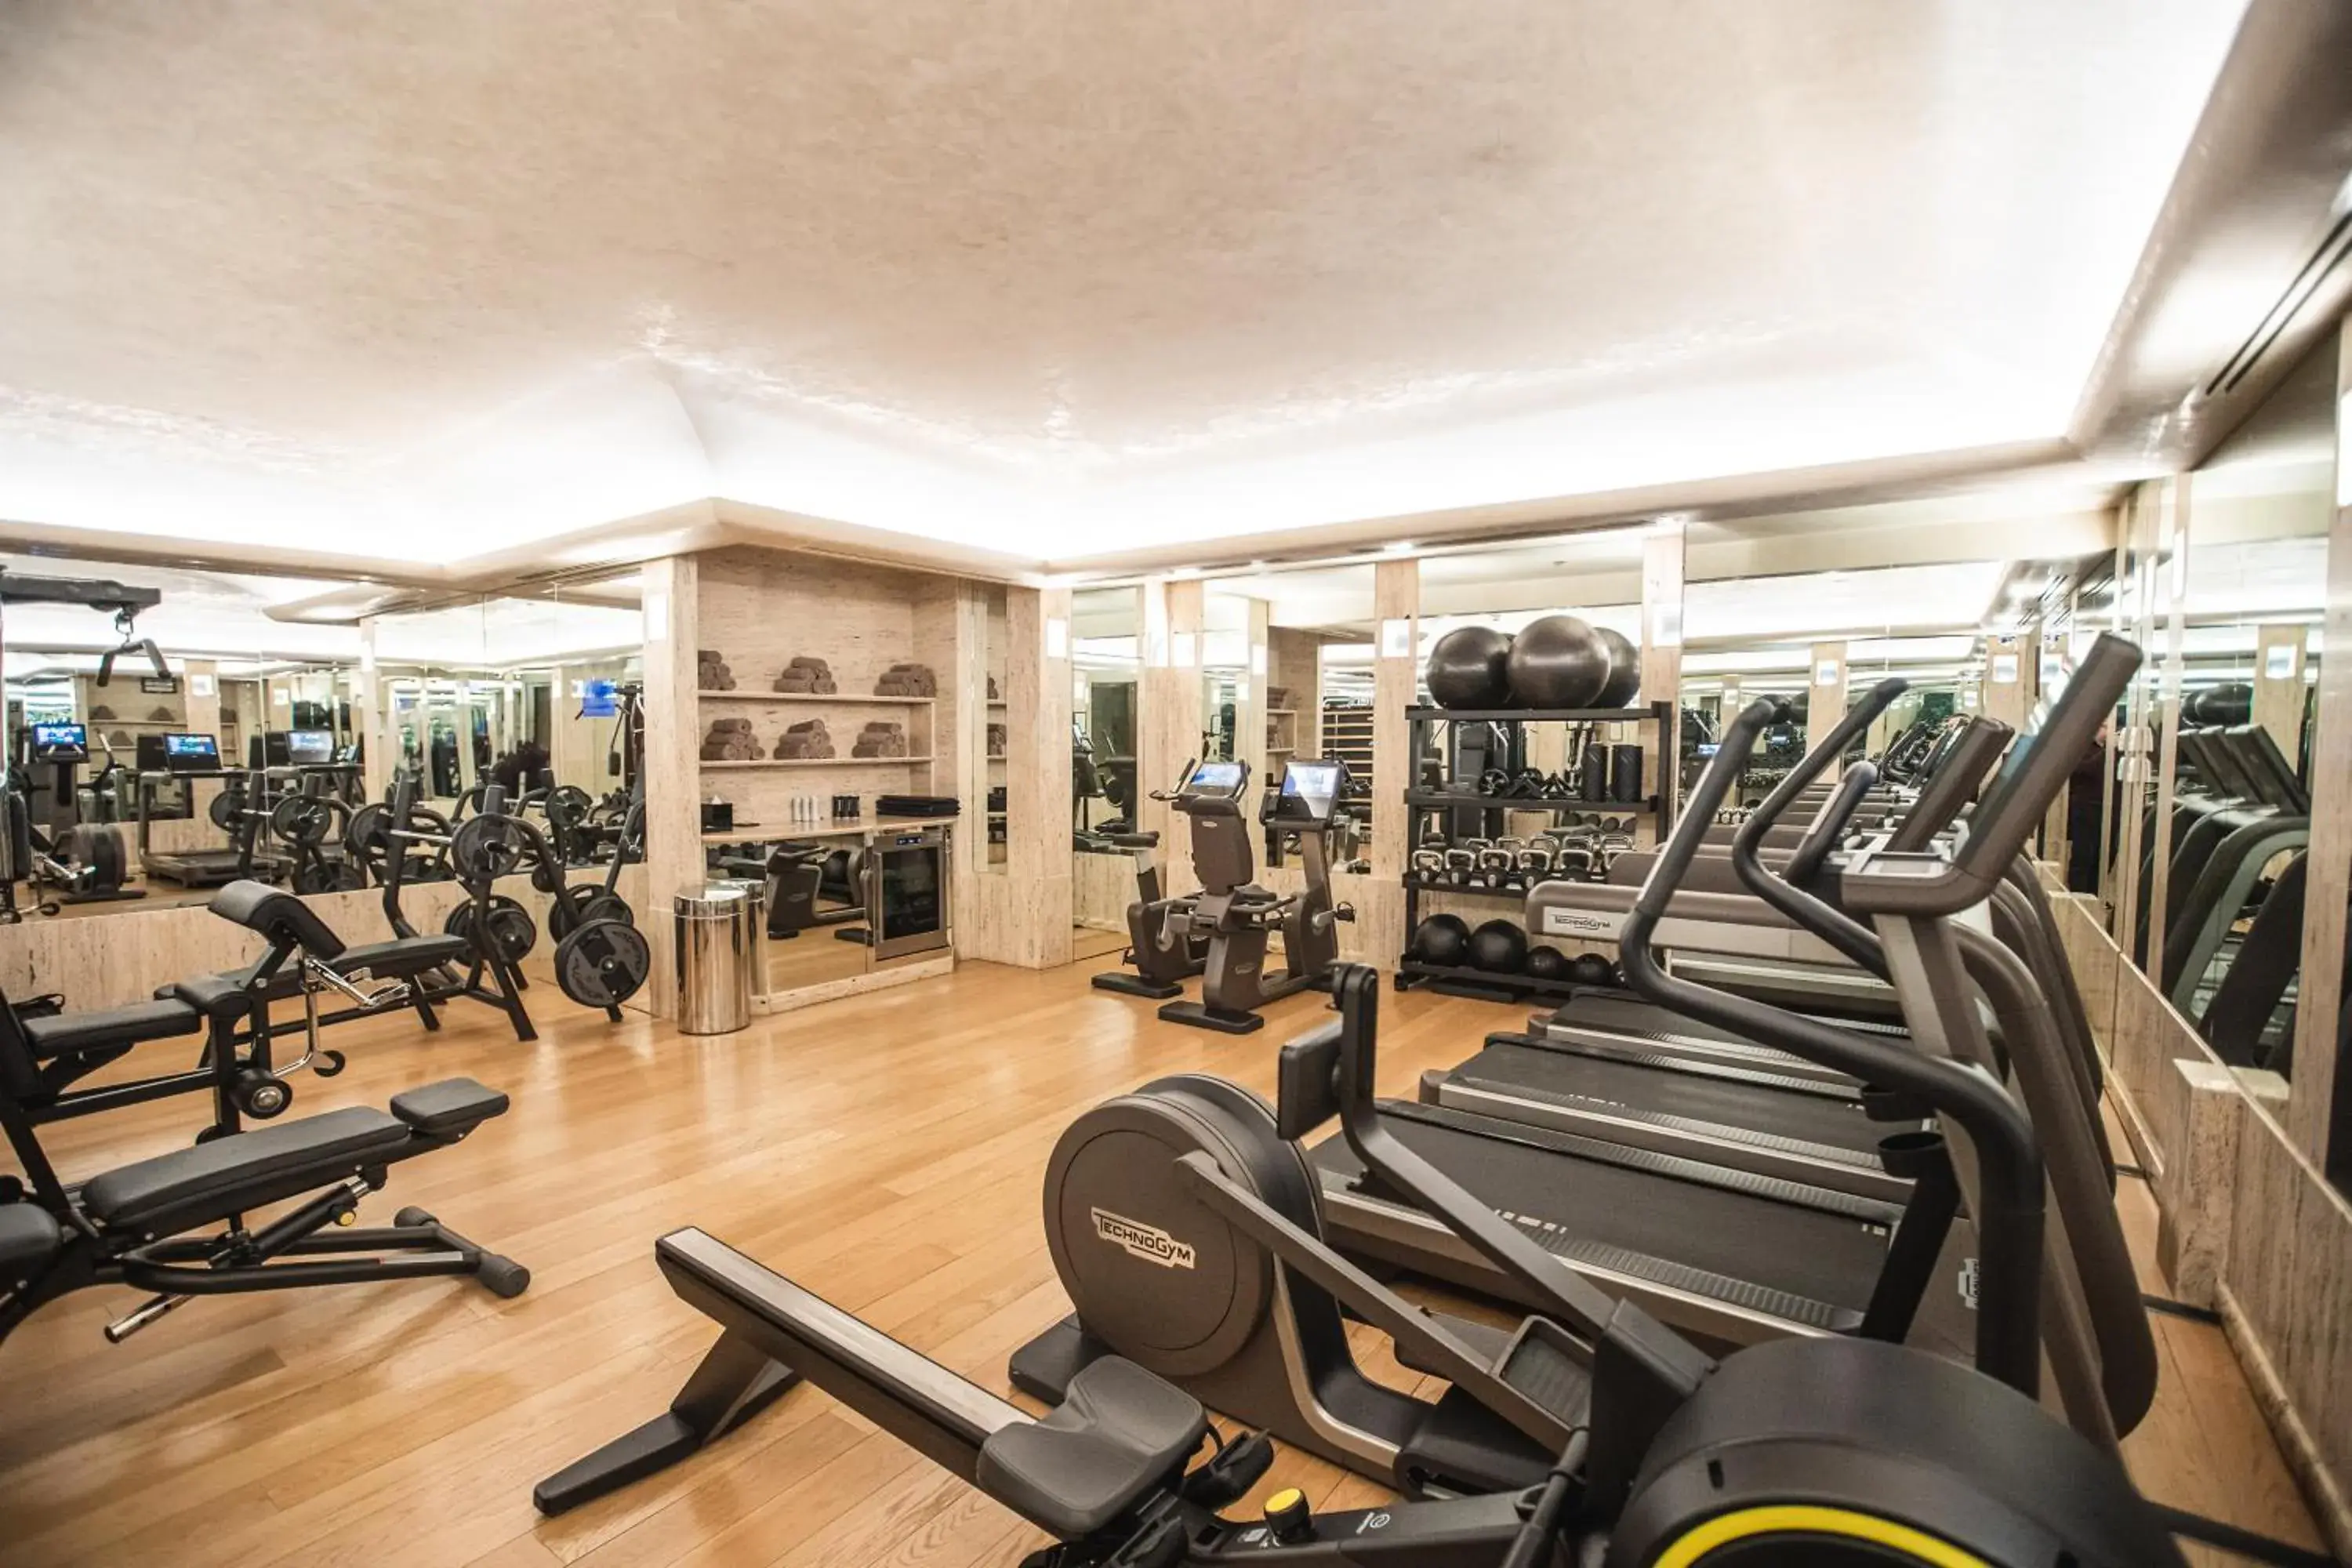 Fitness centre/facilities, Fitness Center/Facilities in Park Hyatt Milano